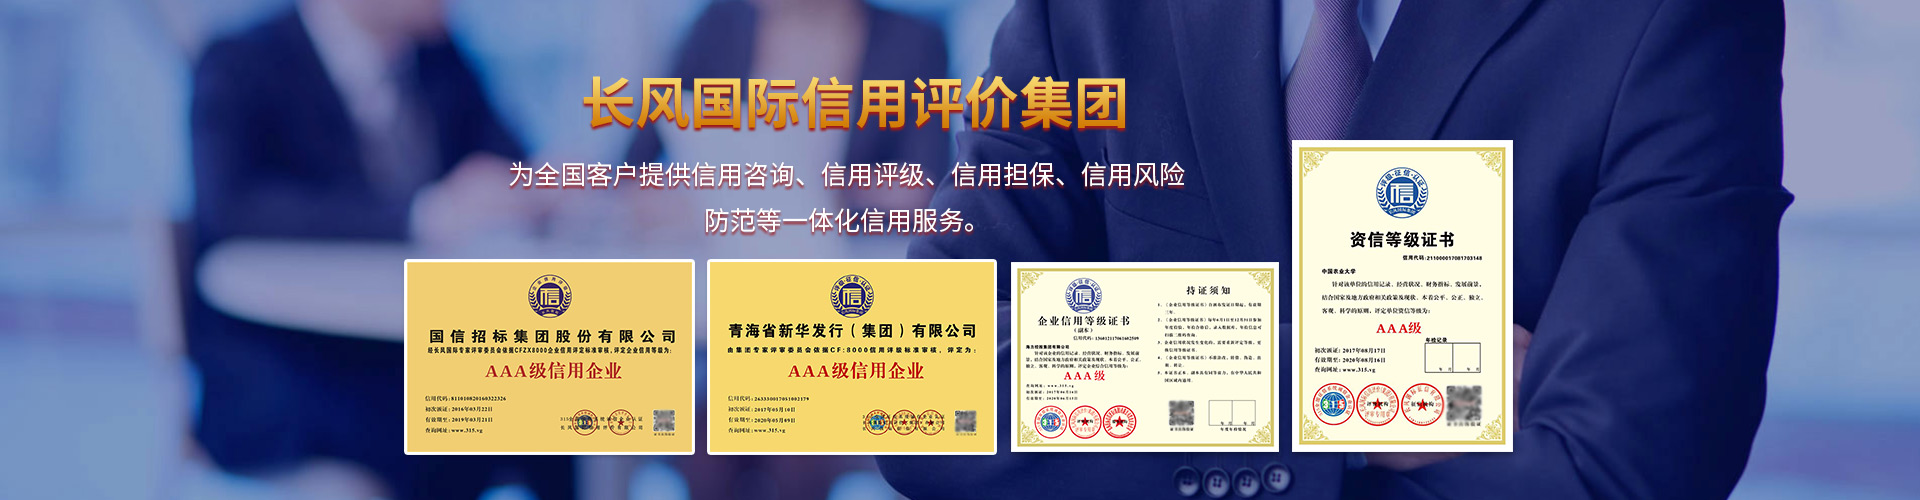 安徽省企业信用评级安徽信用评级公司AAA级申请